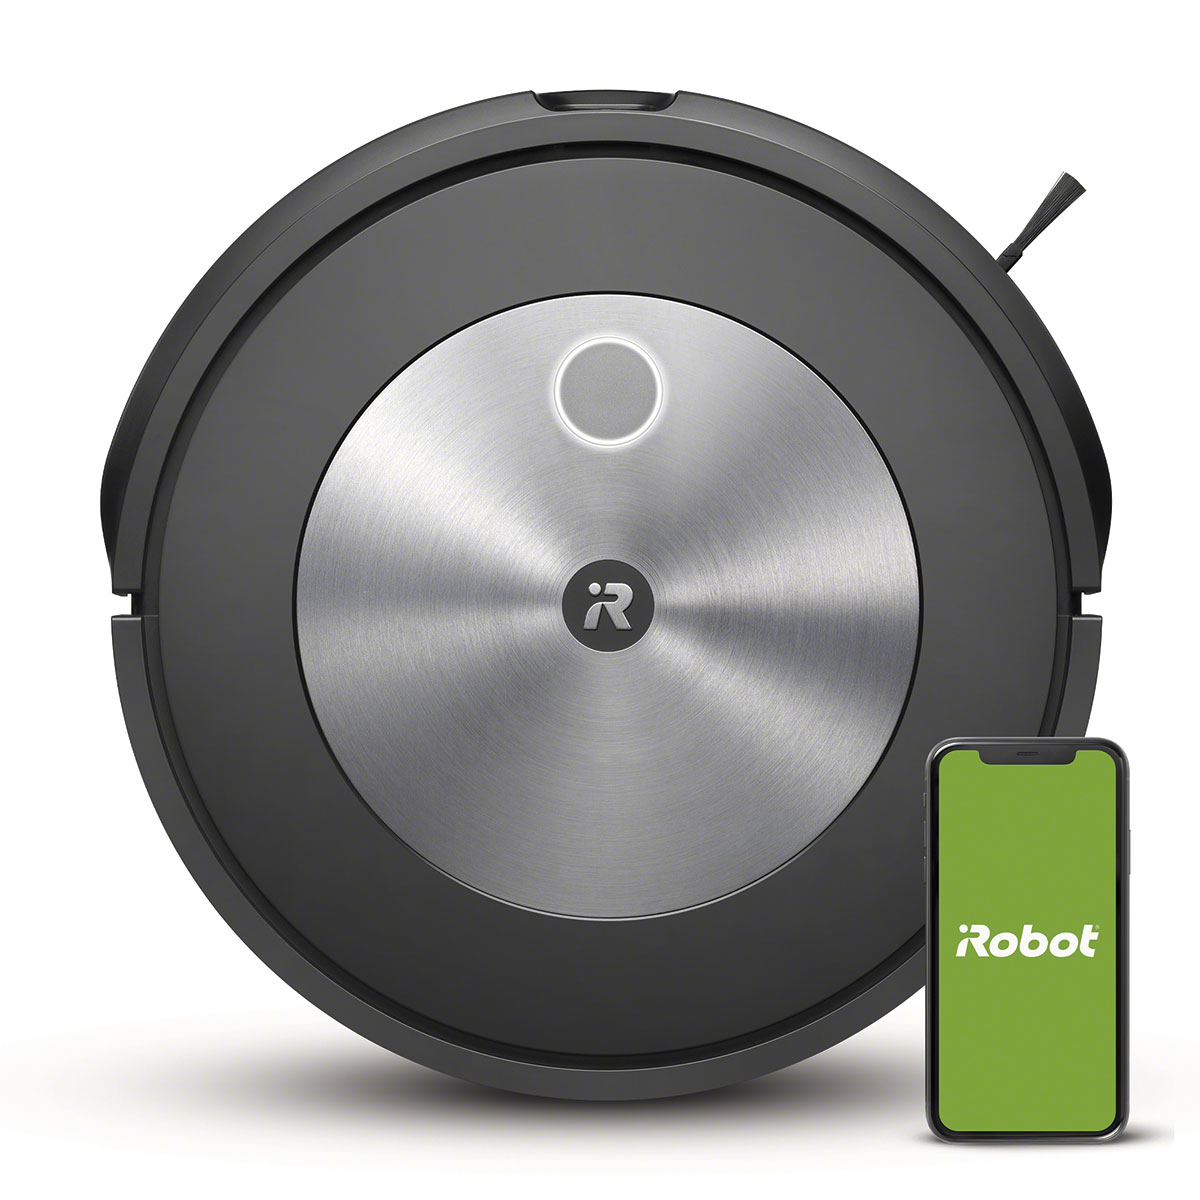 Accesorios de Roomba - iRobot Uruguay – iRobot Uruguay